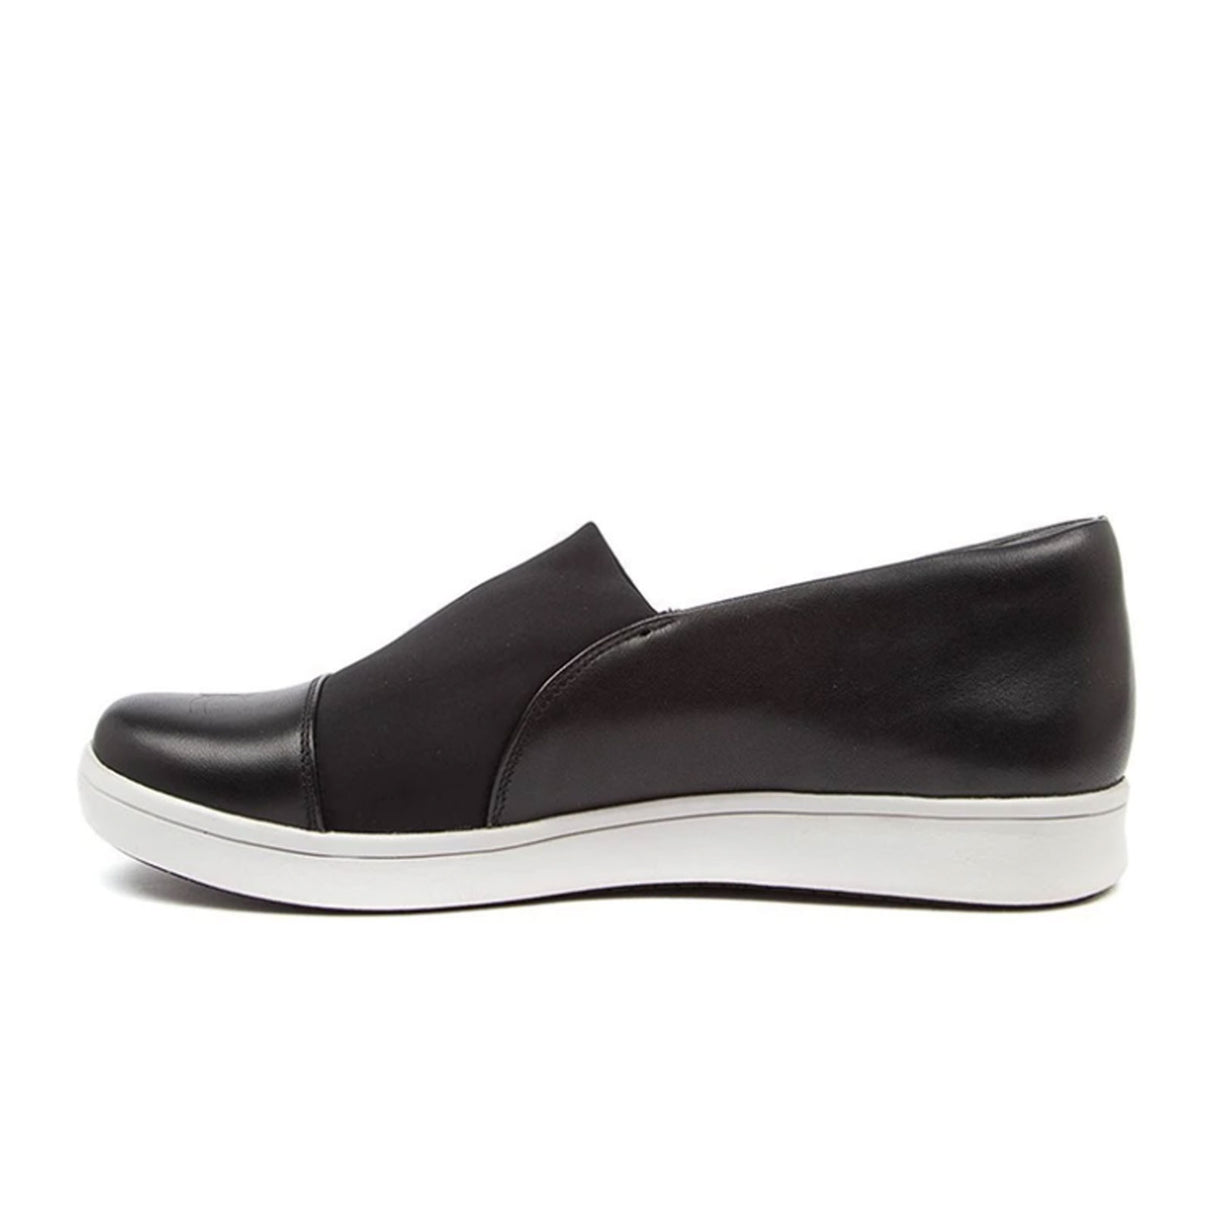 Ziera Duke Slip On (Women) - Black Leather/Neoprene Dress-Casual - Slip Ons - The Heel Shoe Fitters